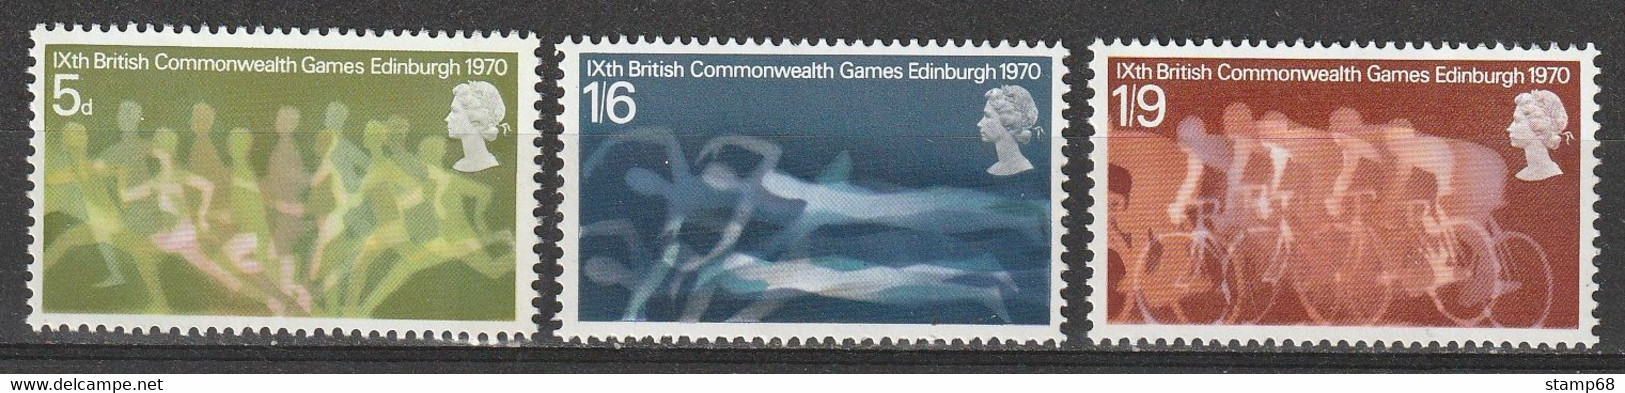 Egeland United Kingdom Mi 552-54 Commonwealth Spiele 1970 MNH Postfris - Unused Stamps